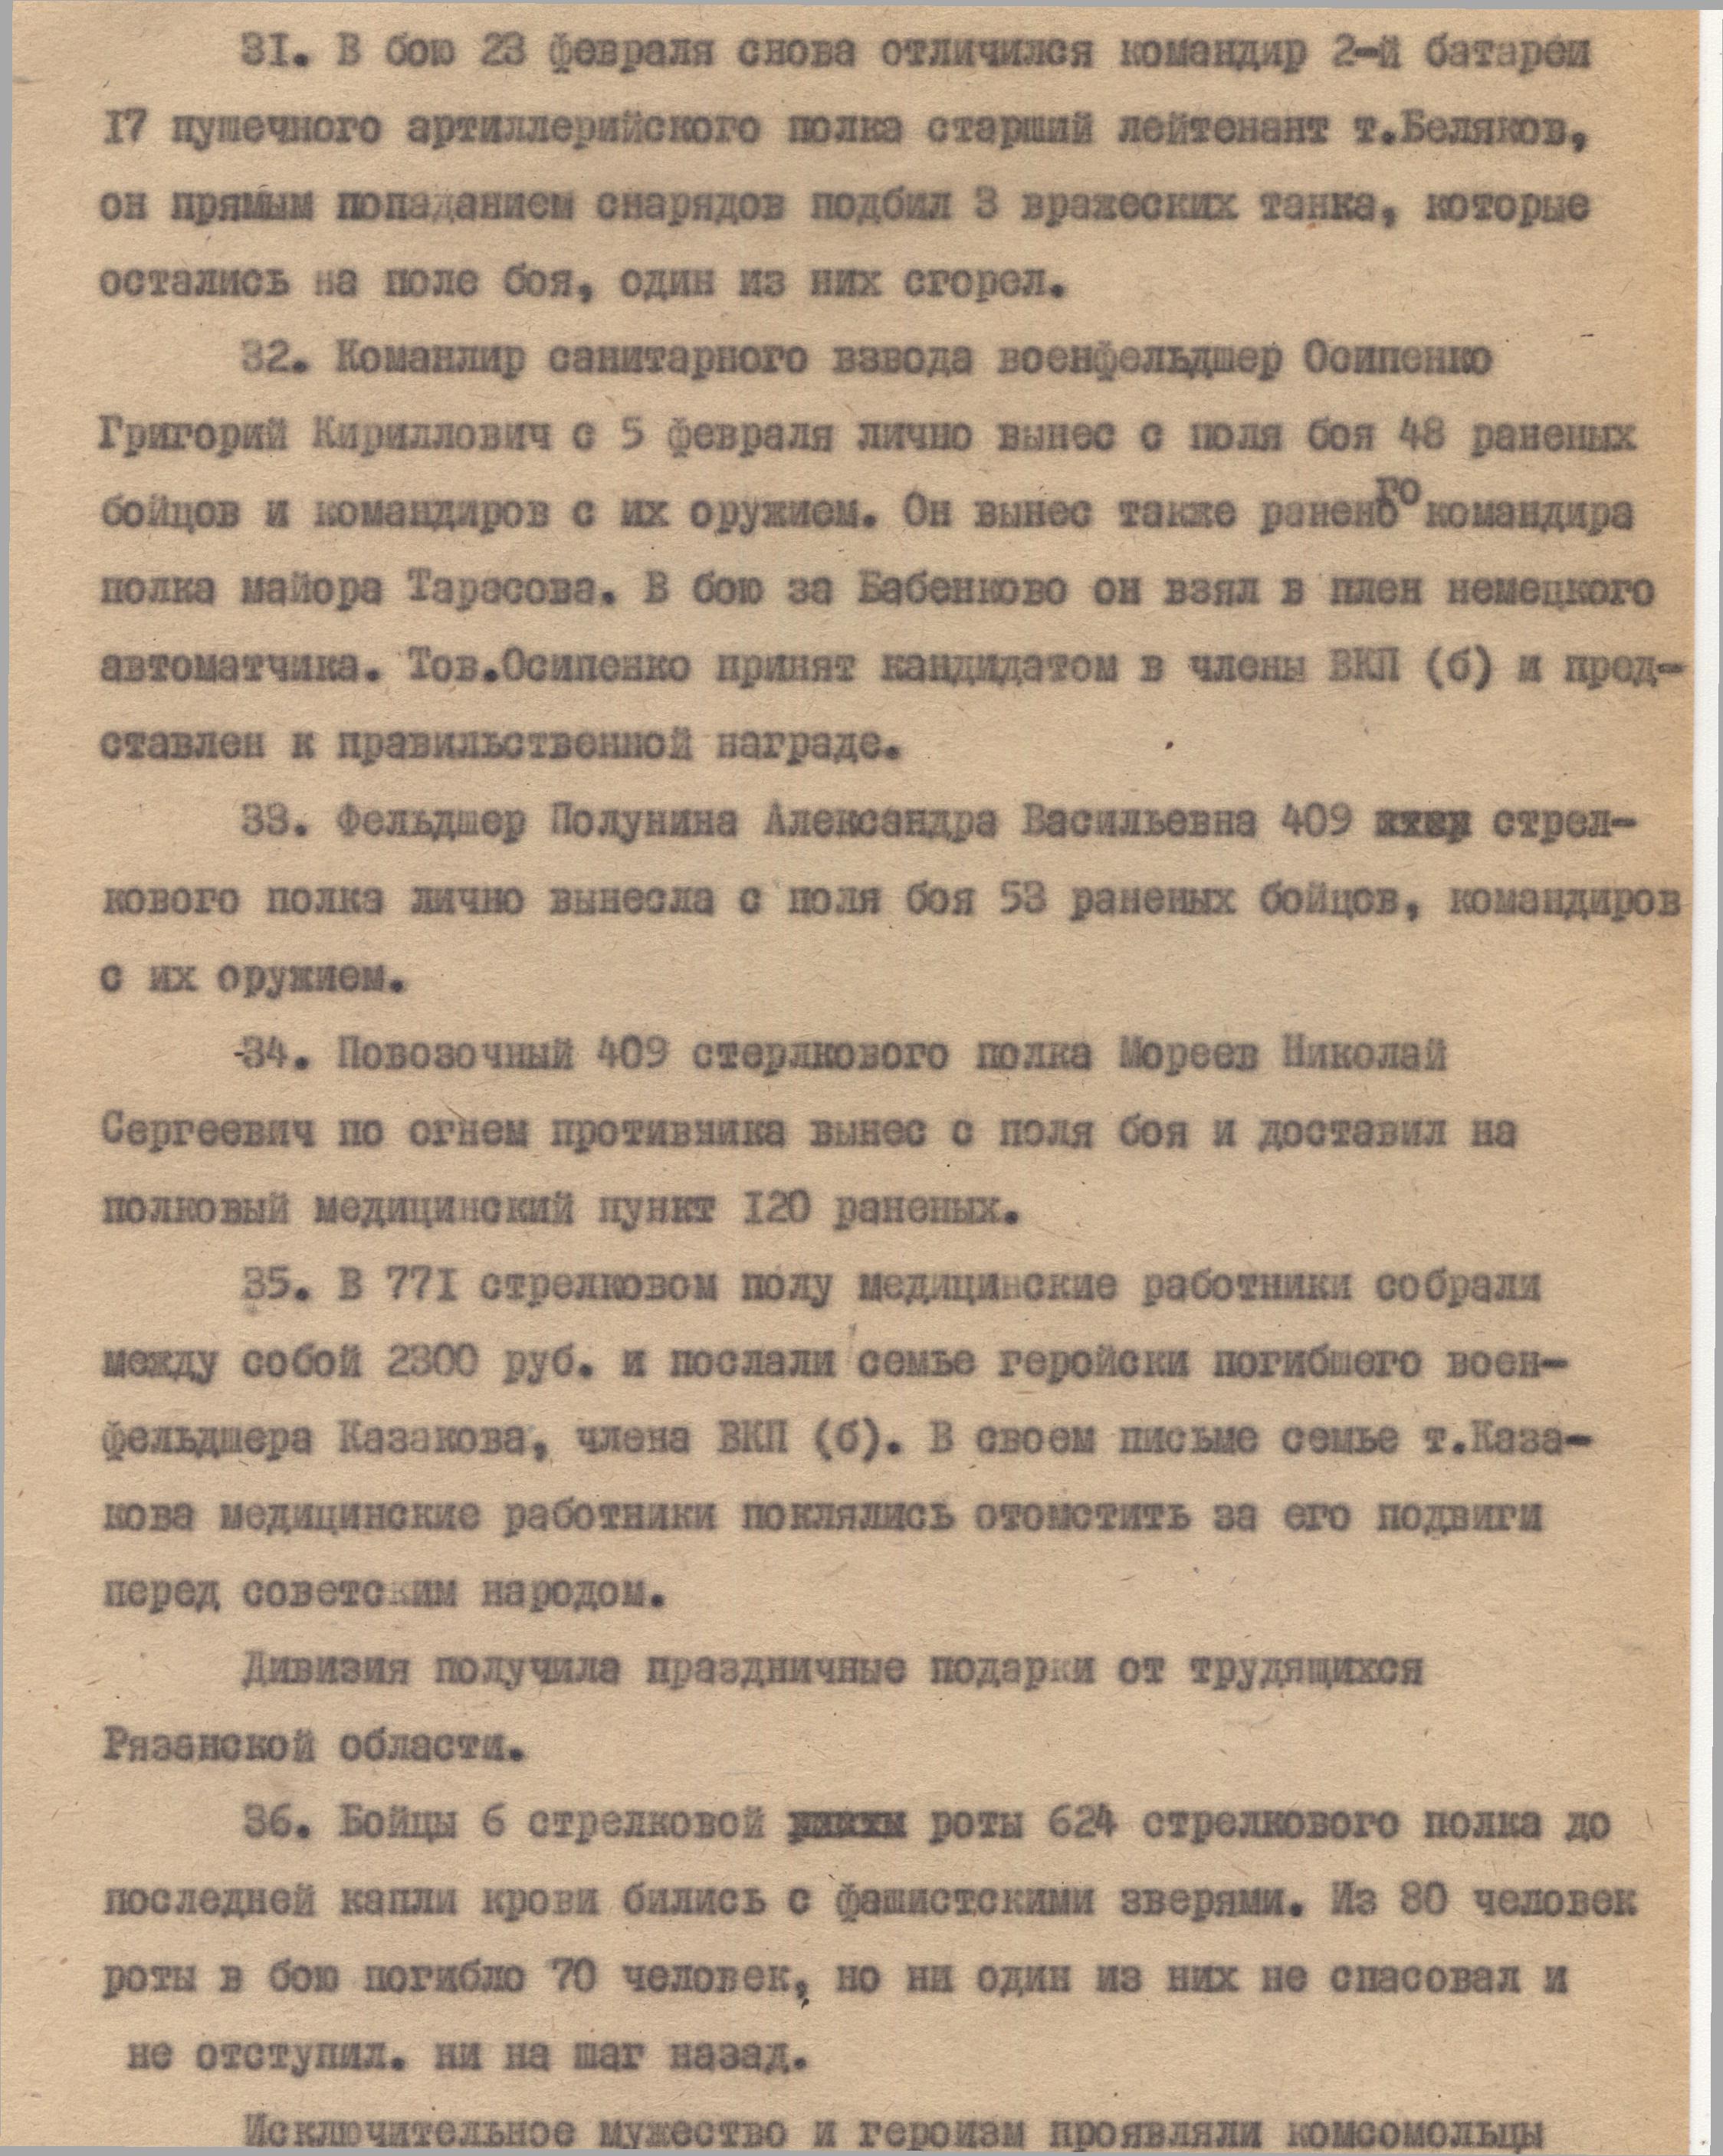 Массовый героизм бойцов Красной Армии во время ВОВ на примере одной операции